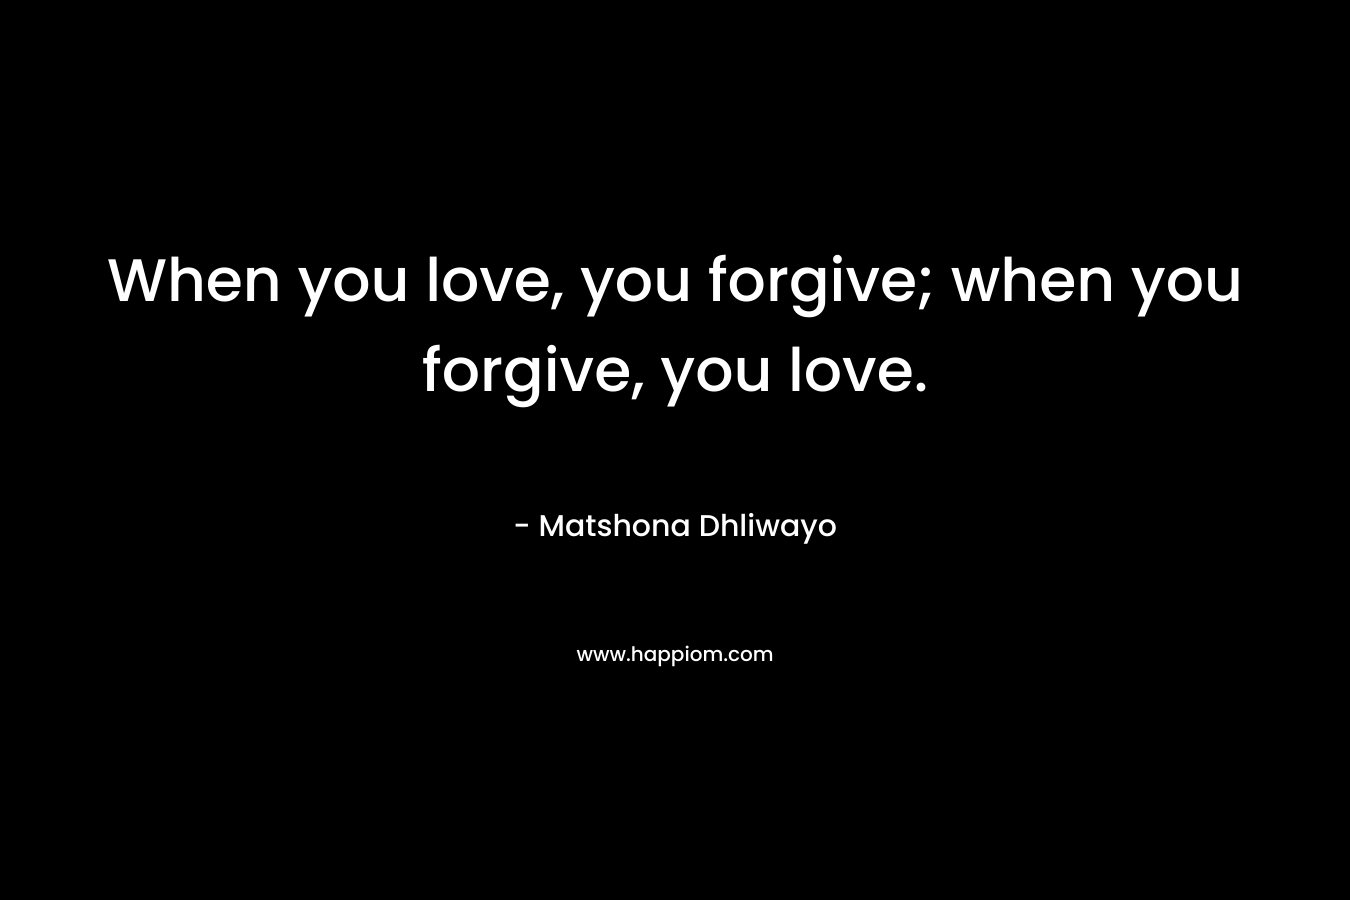 When you love, you forgive; when you forgive, you love.